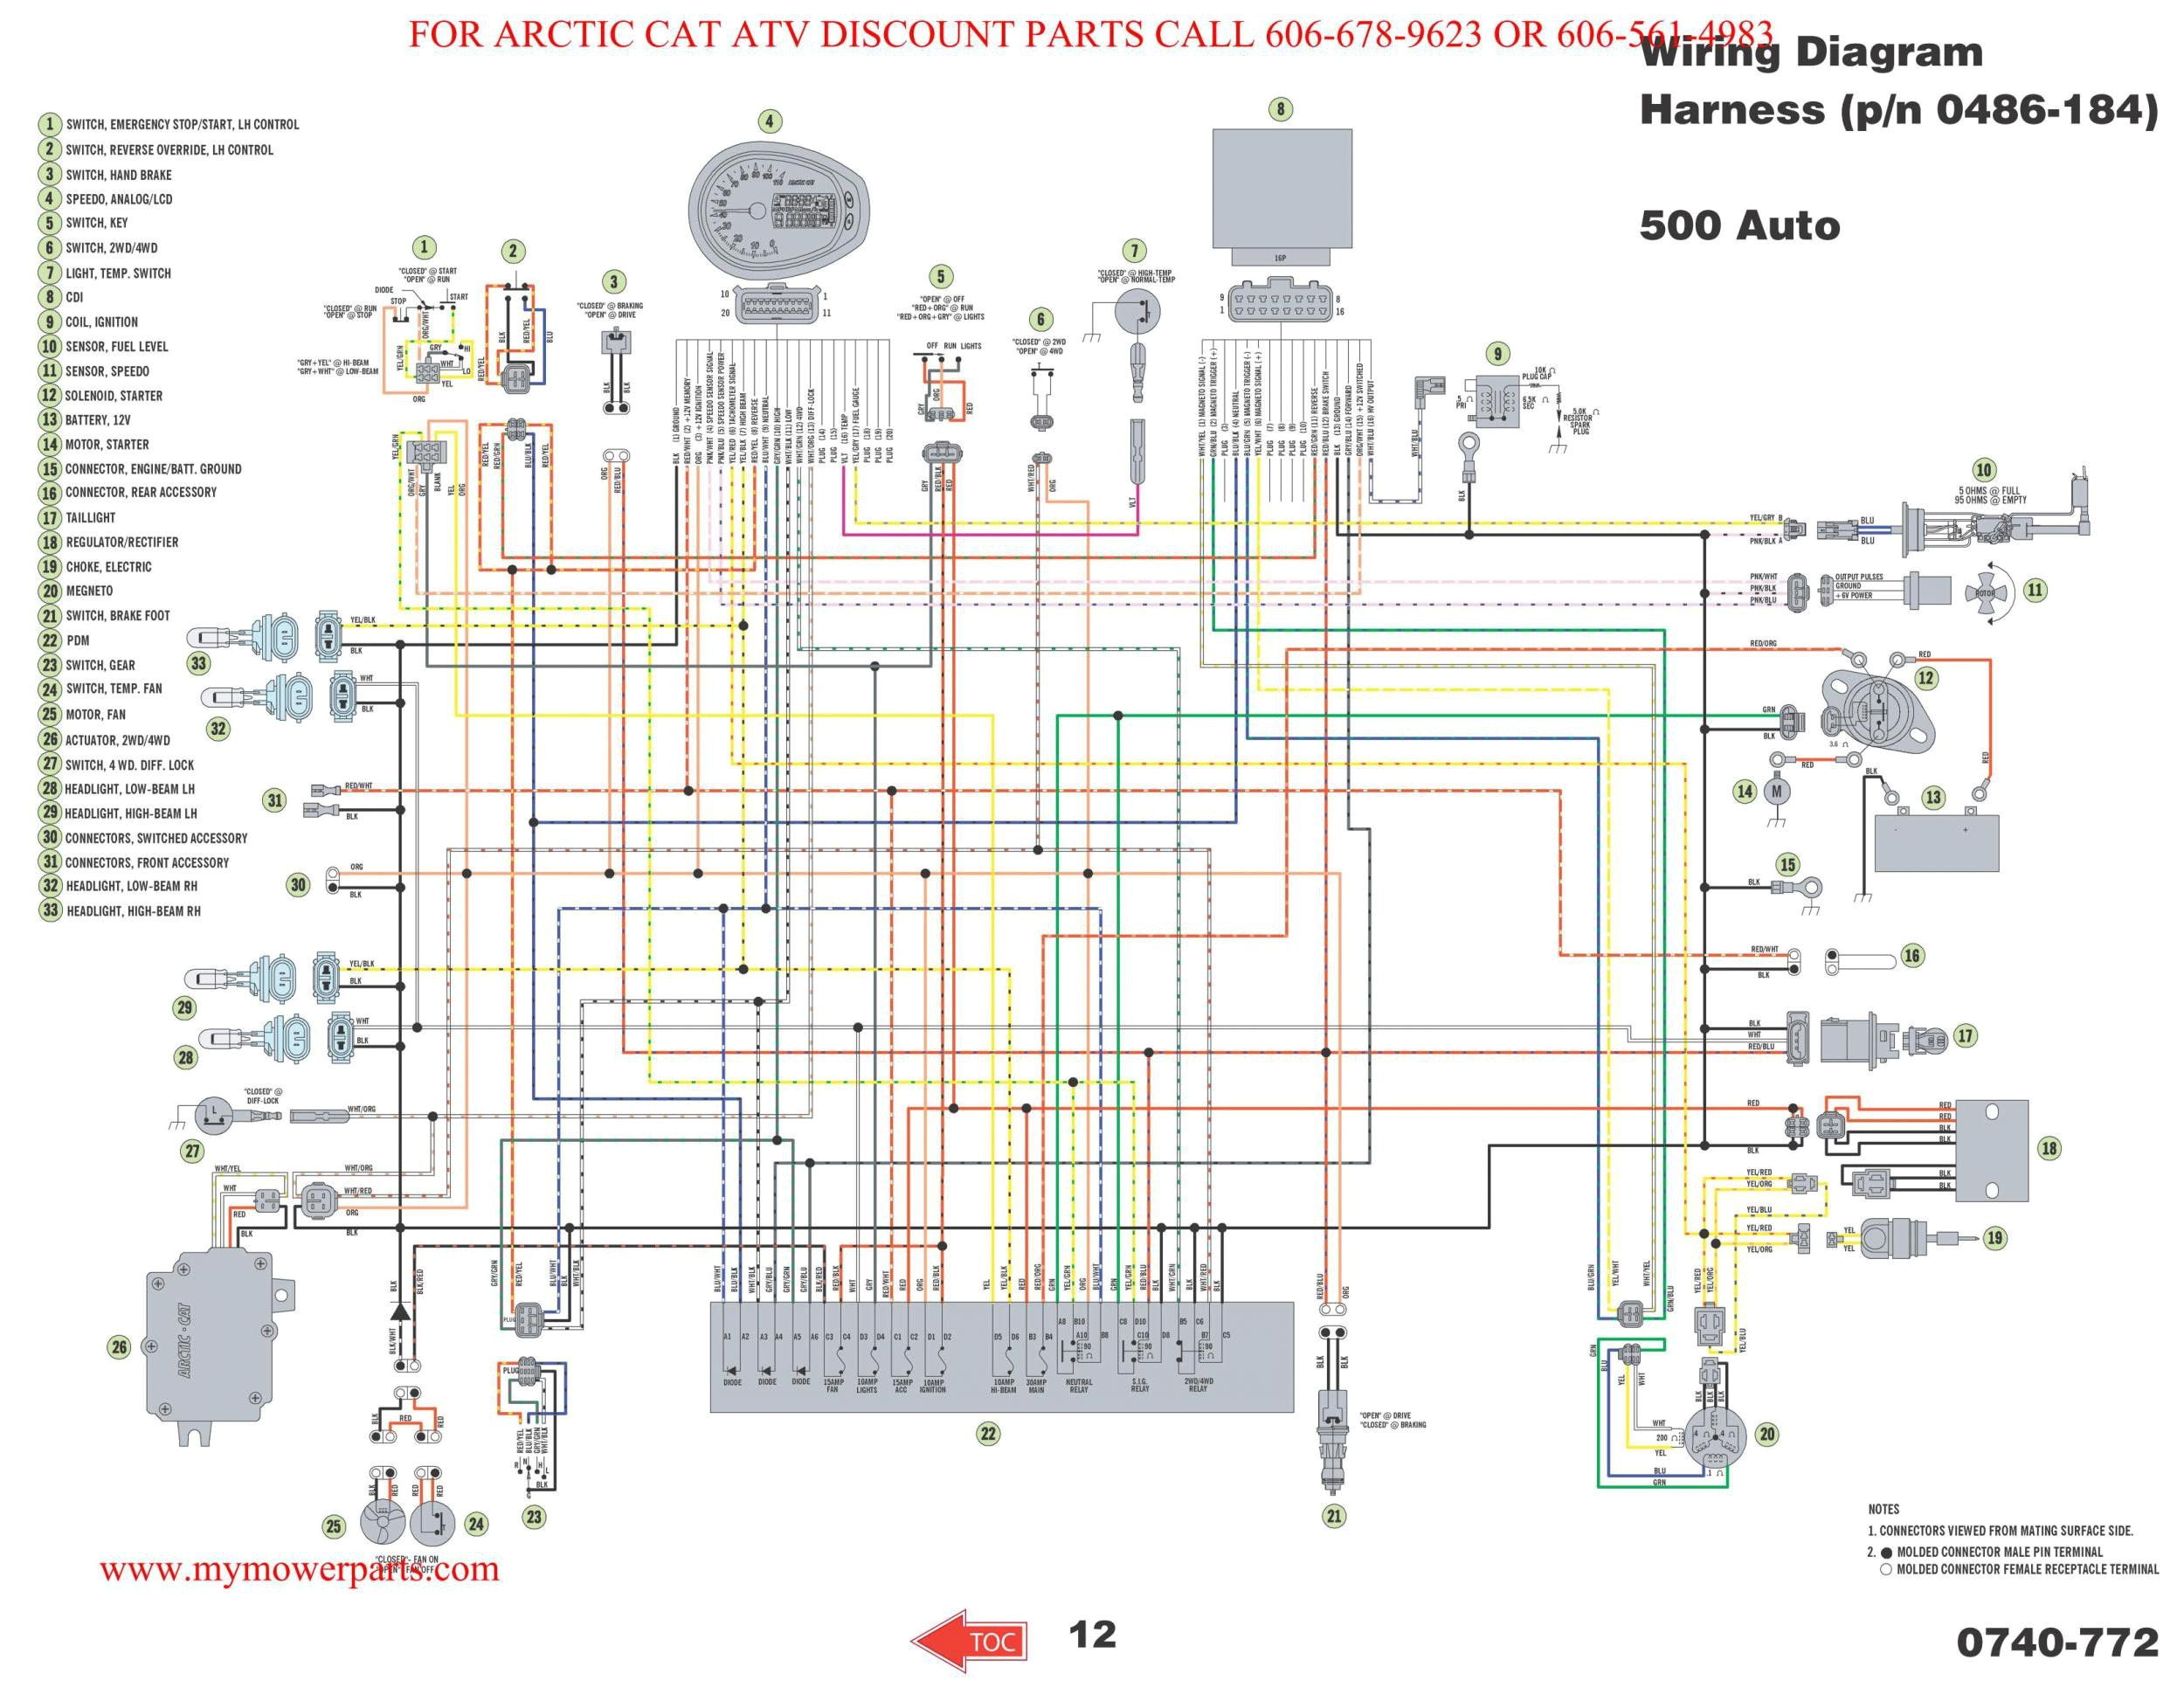 2004 polaris wiring harness wiring diagram sheet polaris atv wiring harness wiring diagram review 2004 polaris